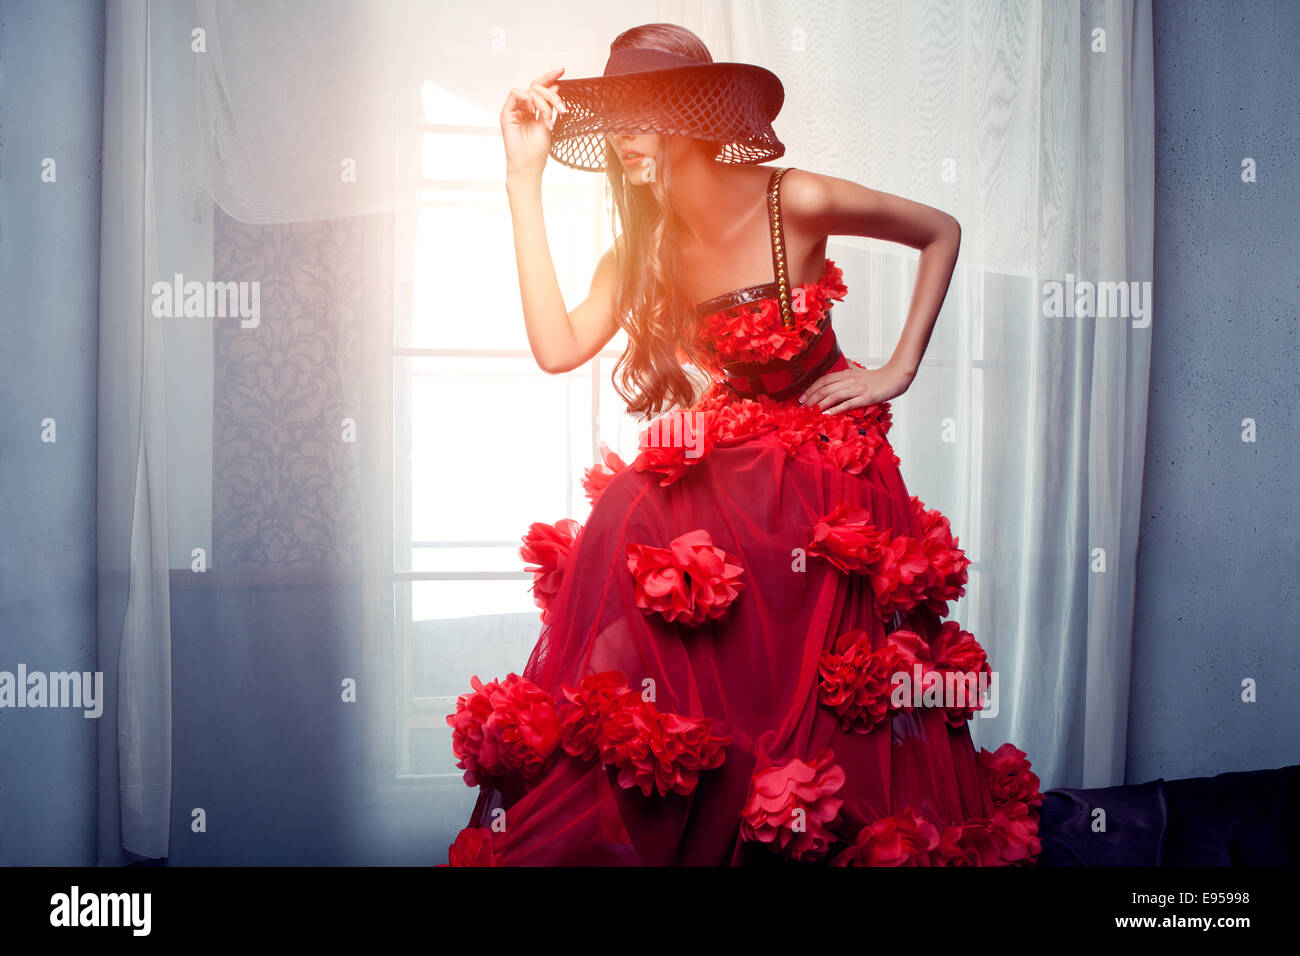 La donna in un abito rosso in piedi nella parte anteriore della finestra Foto Stock